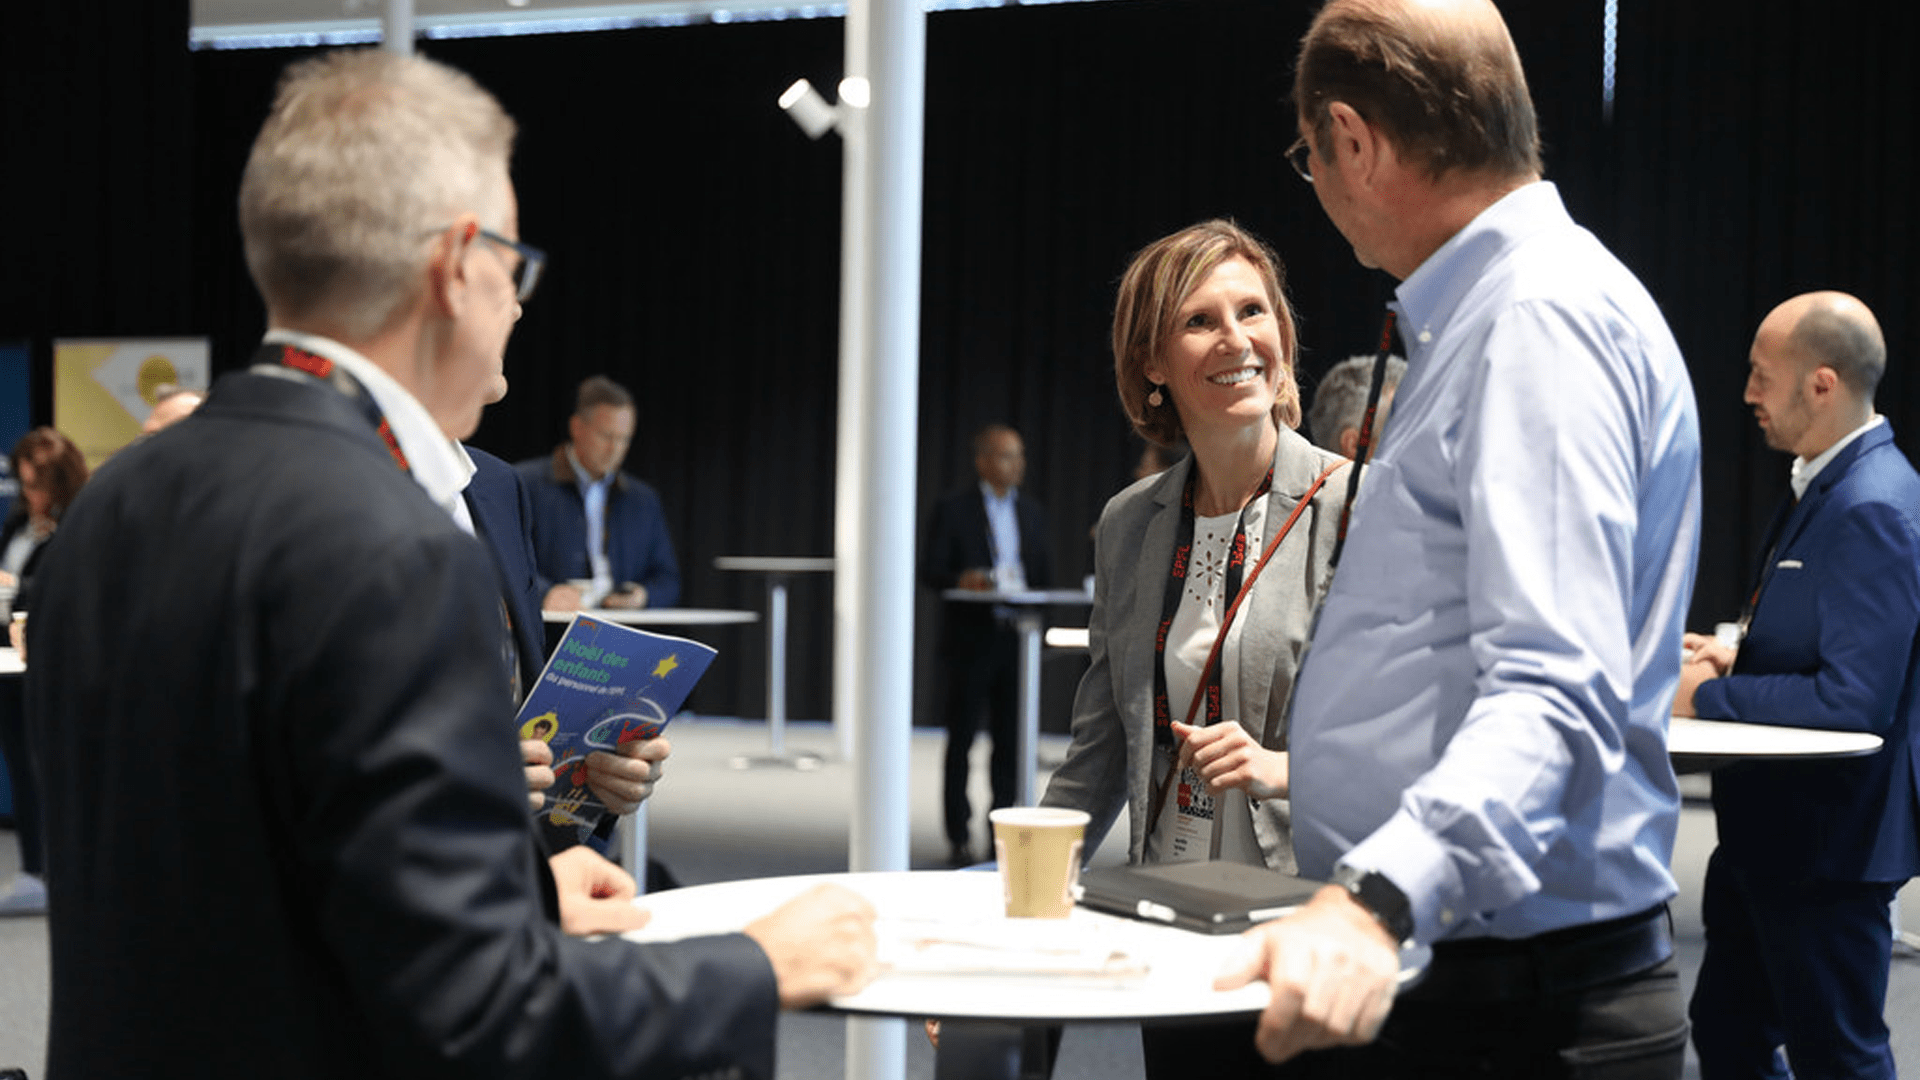 Uuenduslike ettevõtmiste ühendamine asjatundlike investoritega: EPFL Investori päev 2023 (sponsoreeritud) | EU-idufirmad